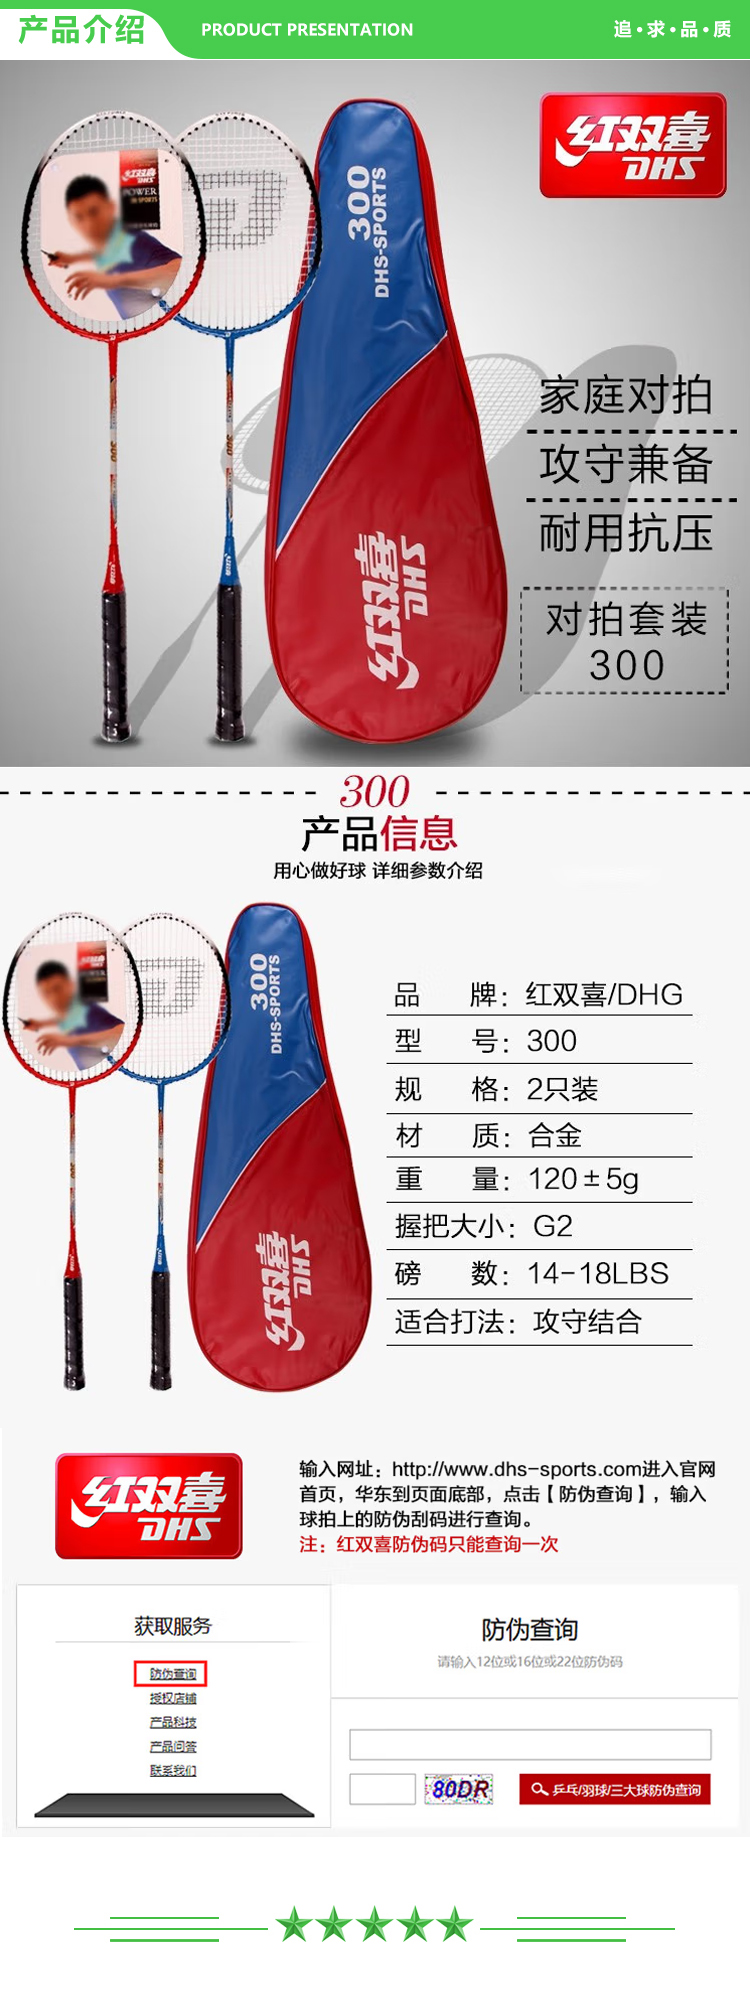 红双喜 DHS 300 羽毛球拍对拍铁合金羽拍  (2).jpg